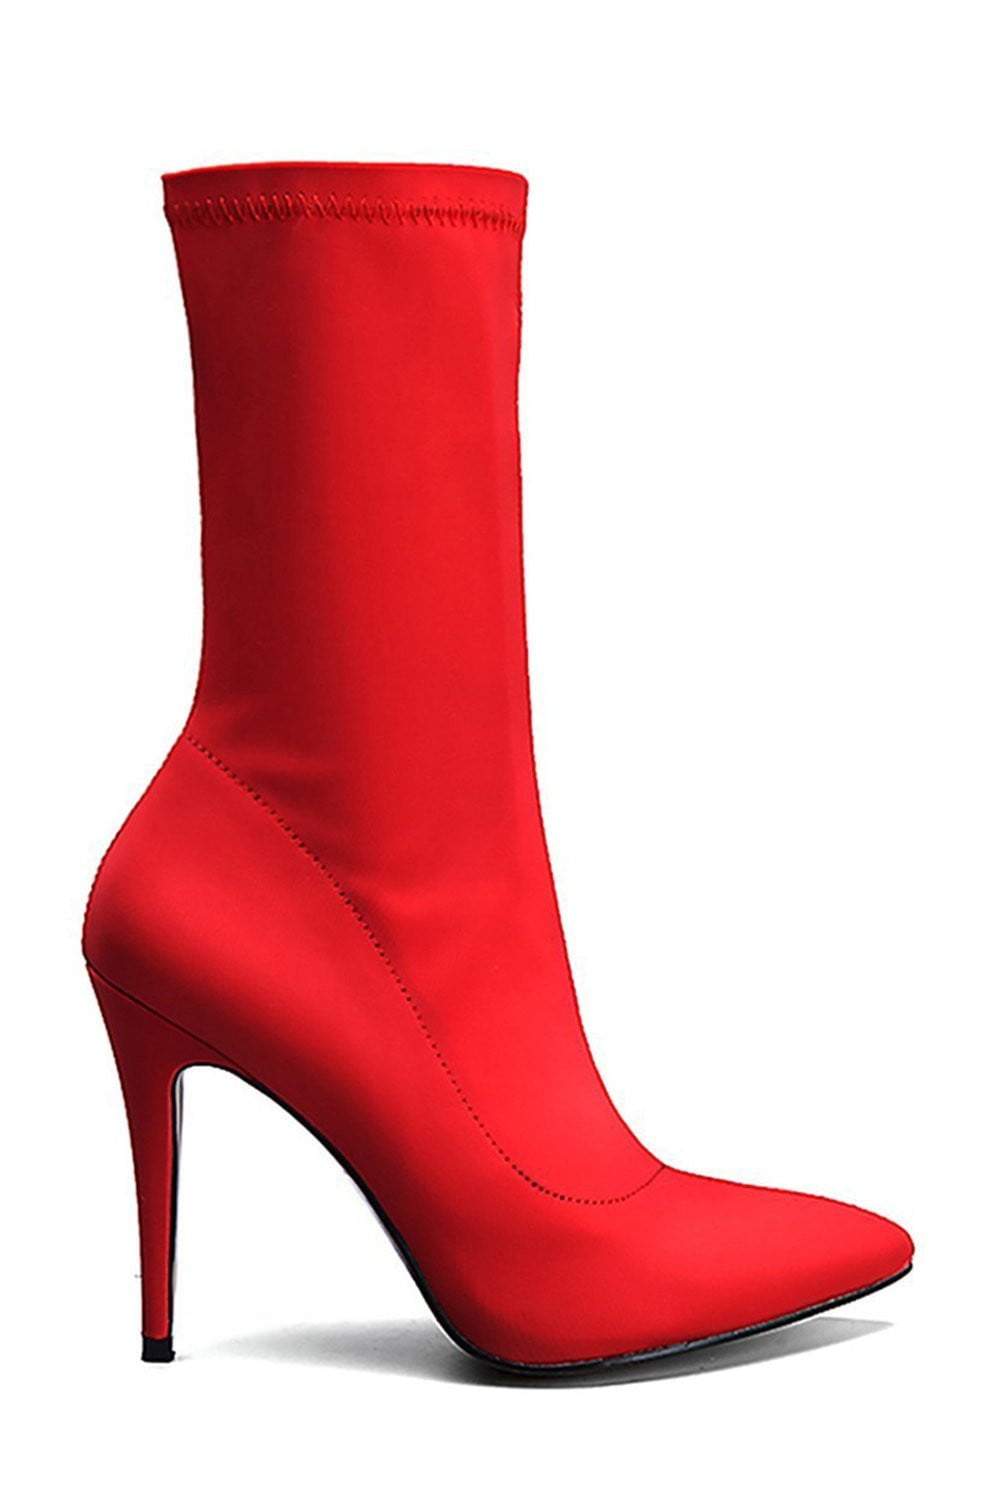 red sock heel boots